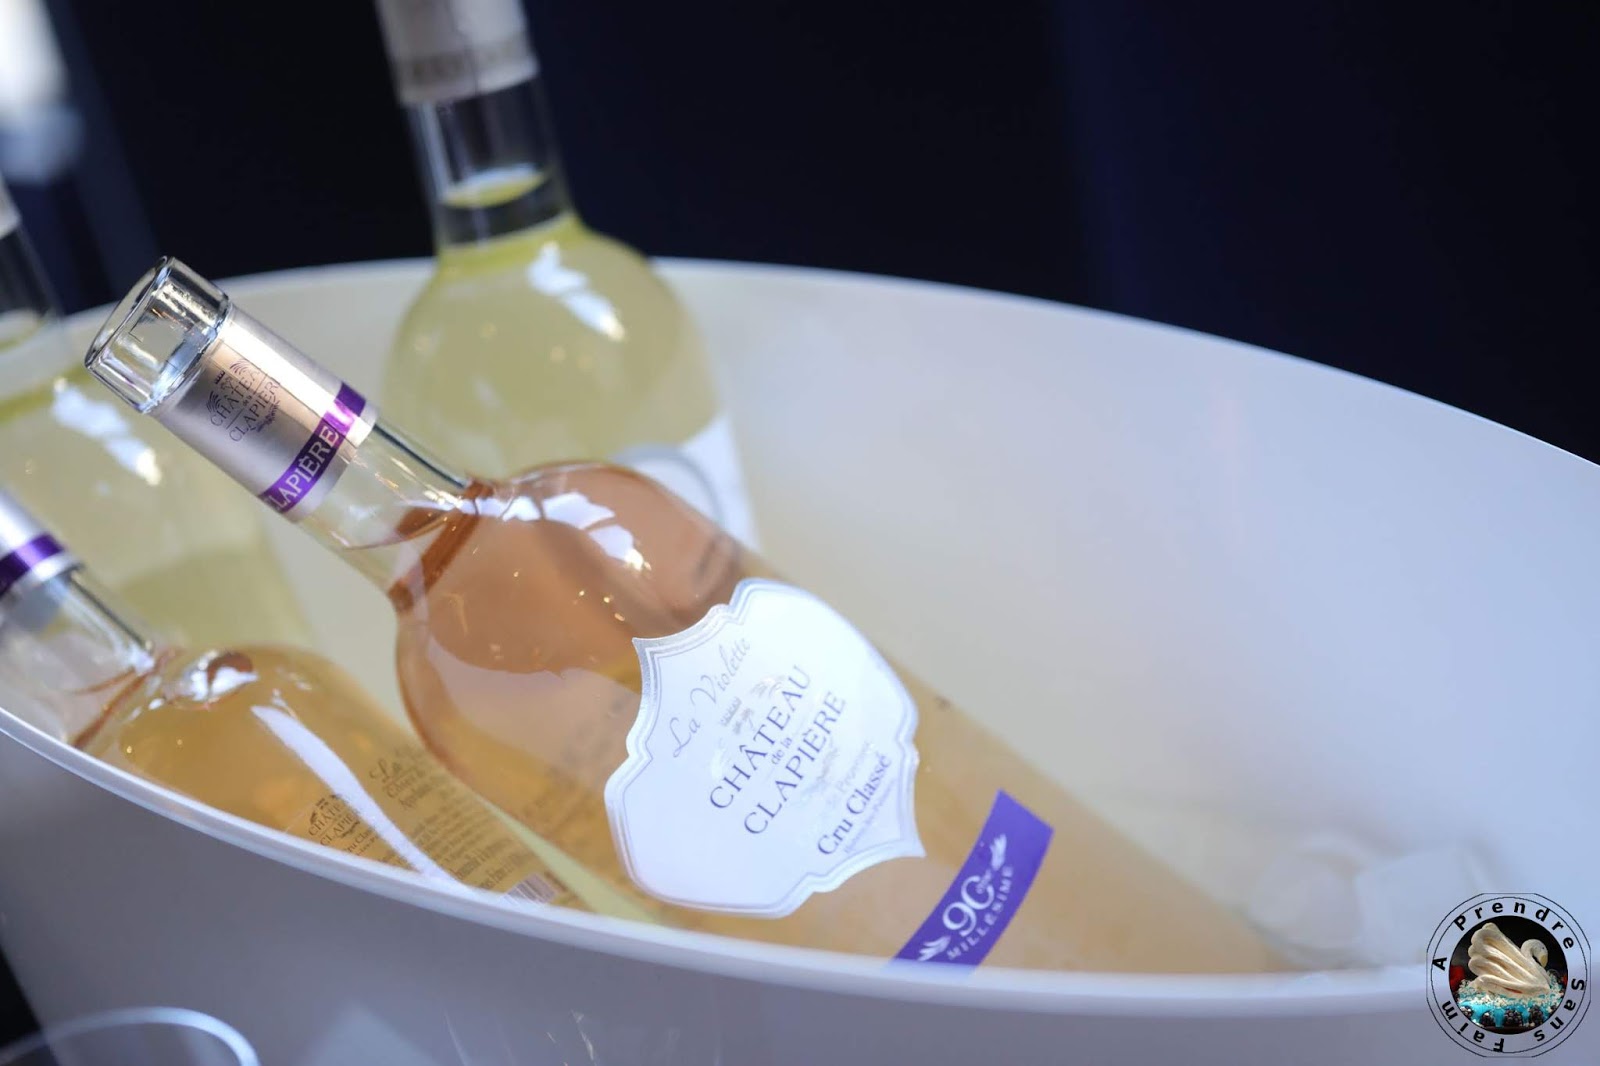  Découverte des vins Fabre en Provence au restaurant Substance